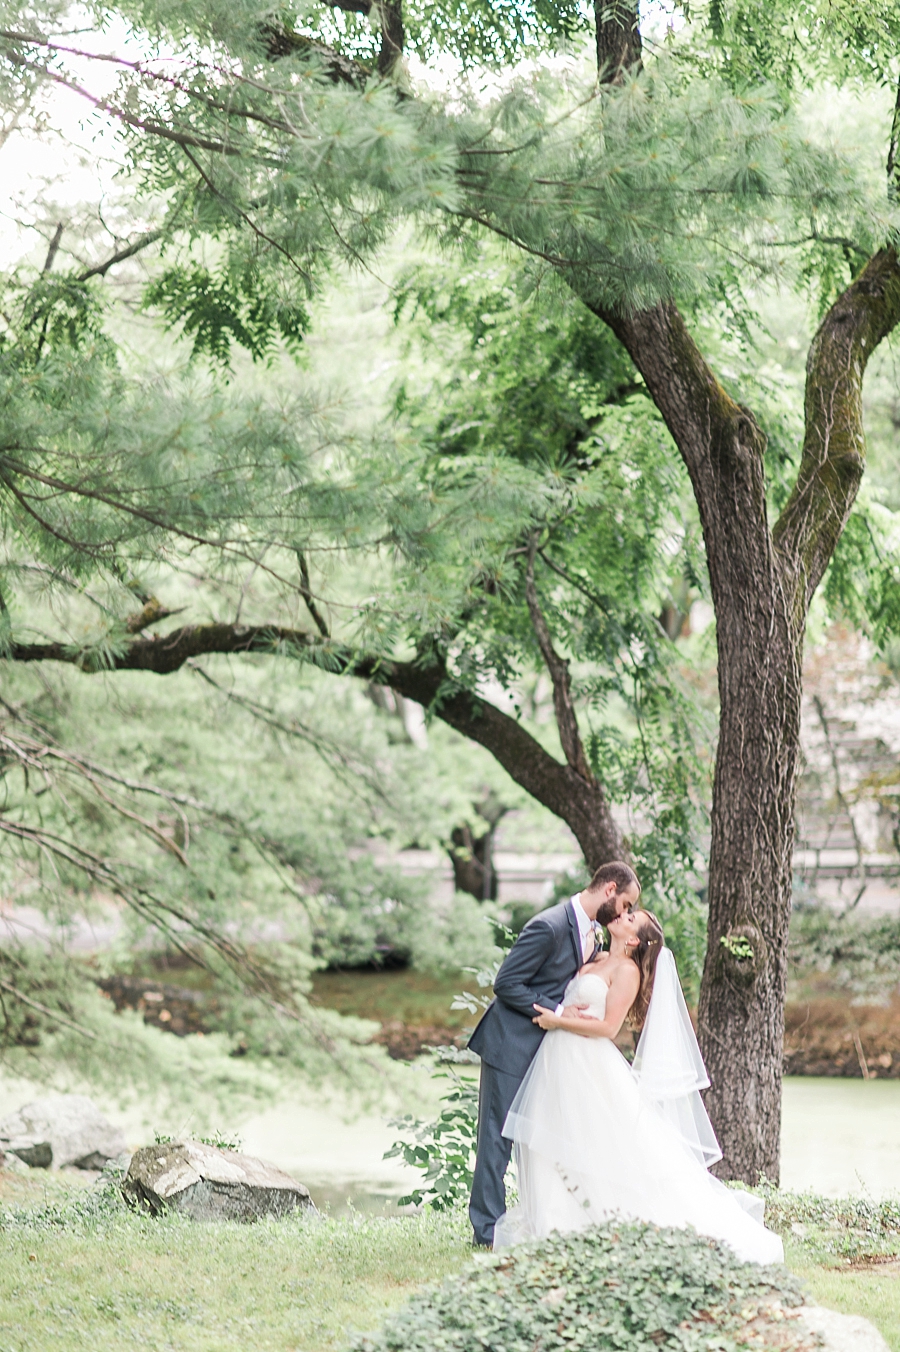 Joe and Lauren | Airlie Center, Warrenton, Virginia Wedding Photographer